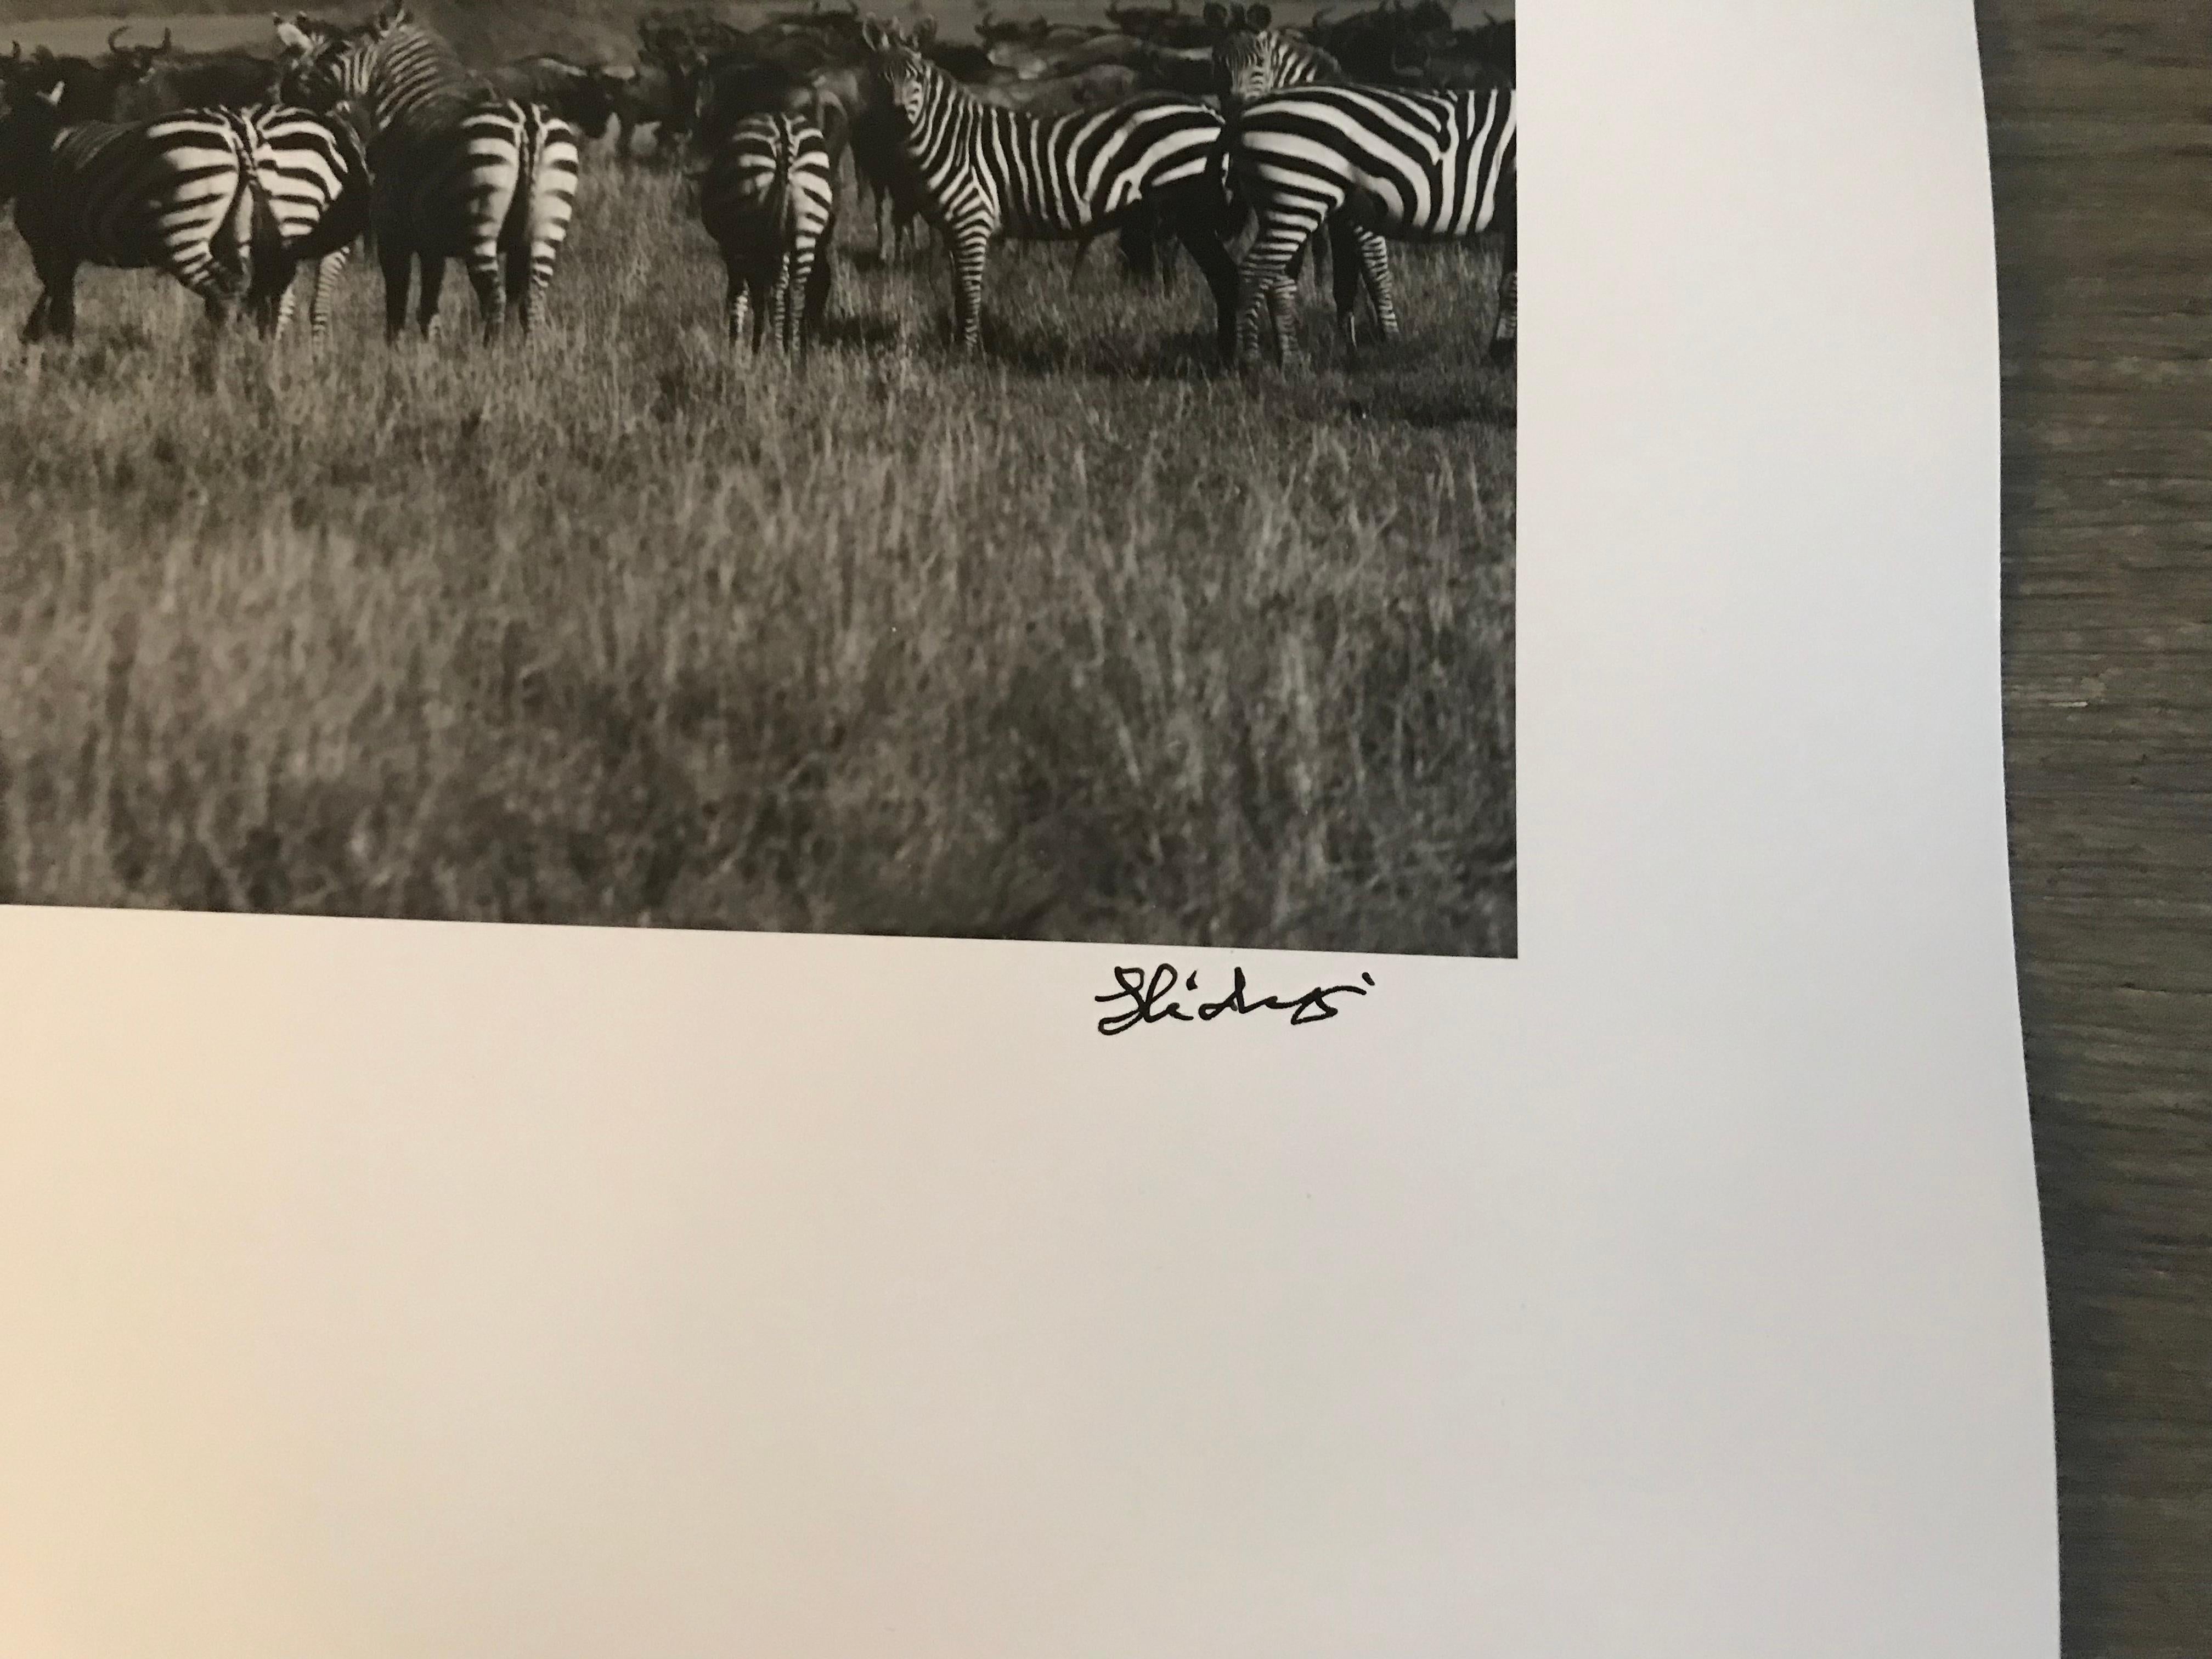 Hideoki, Black & White, Photography, Gnus & Zebras, Tanzania, 1994, 16